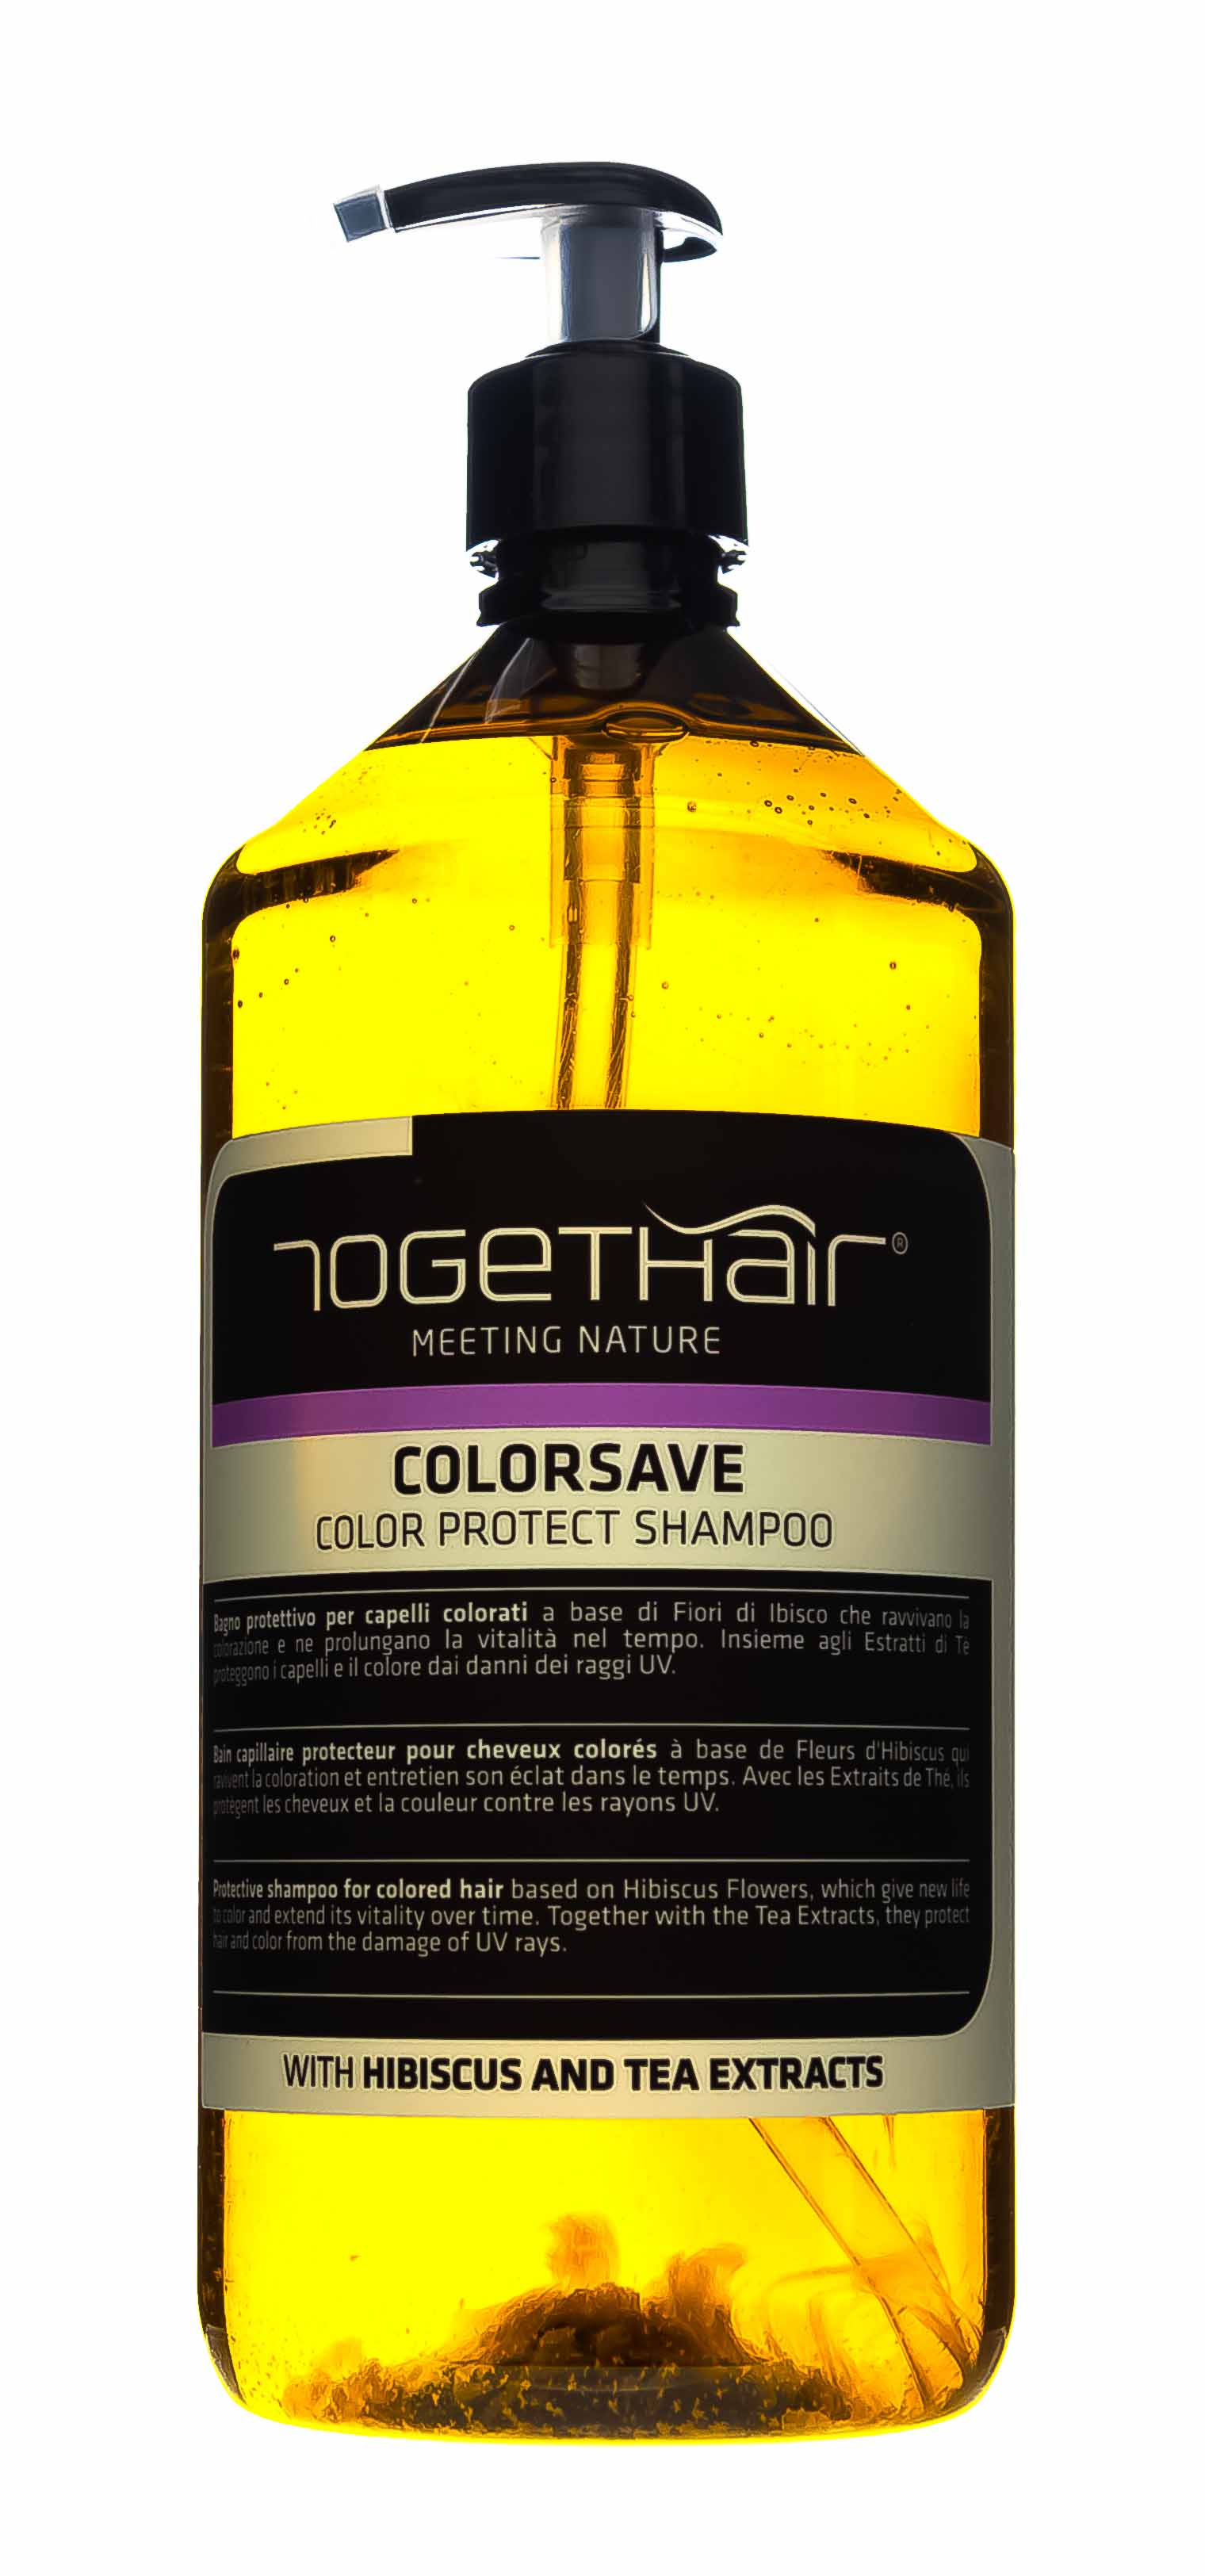 Togethair Шампунь для защиты цвета окрашенных волос, 1000 мл (Togethair, Colorsave) togethair двухфазный спрей для защиты цвета окрашенных волос 200 мл togethair colorsave